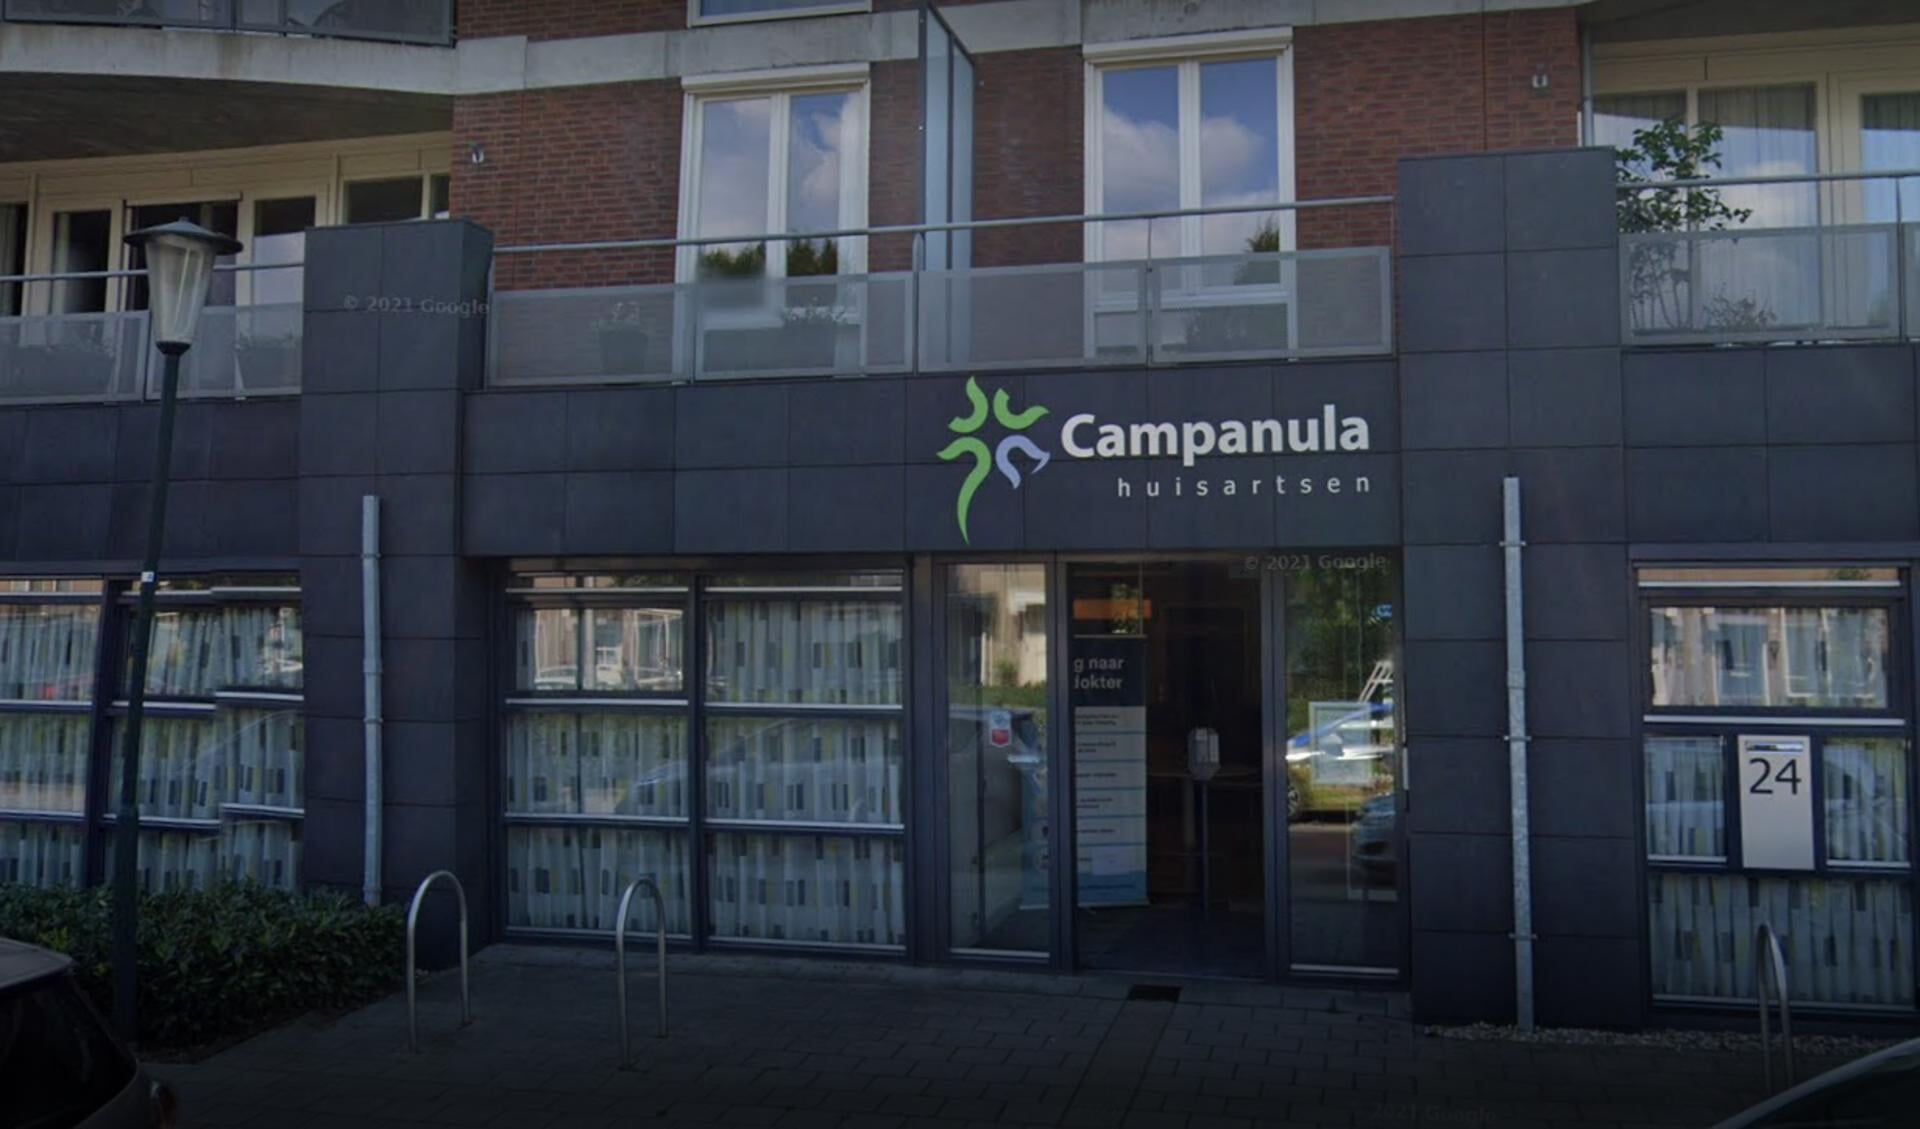 Huisartsenpraktijk Campanula hanteert momenteel al een patiëntenstop. (Bron: Google Street View)